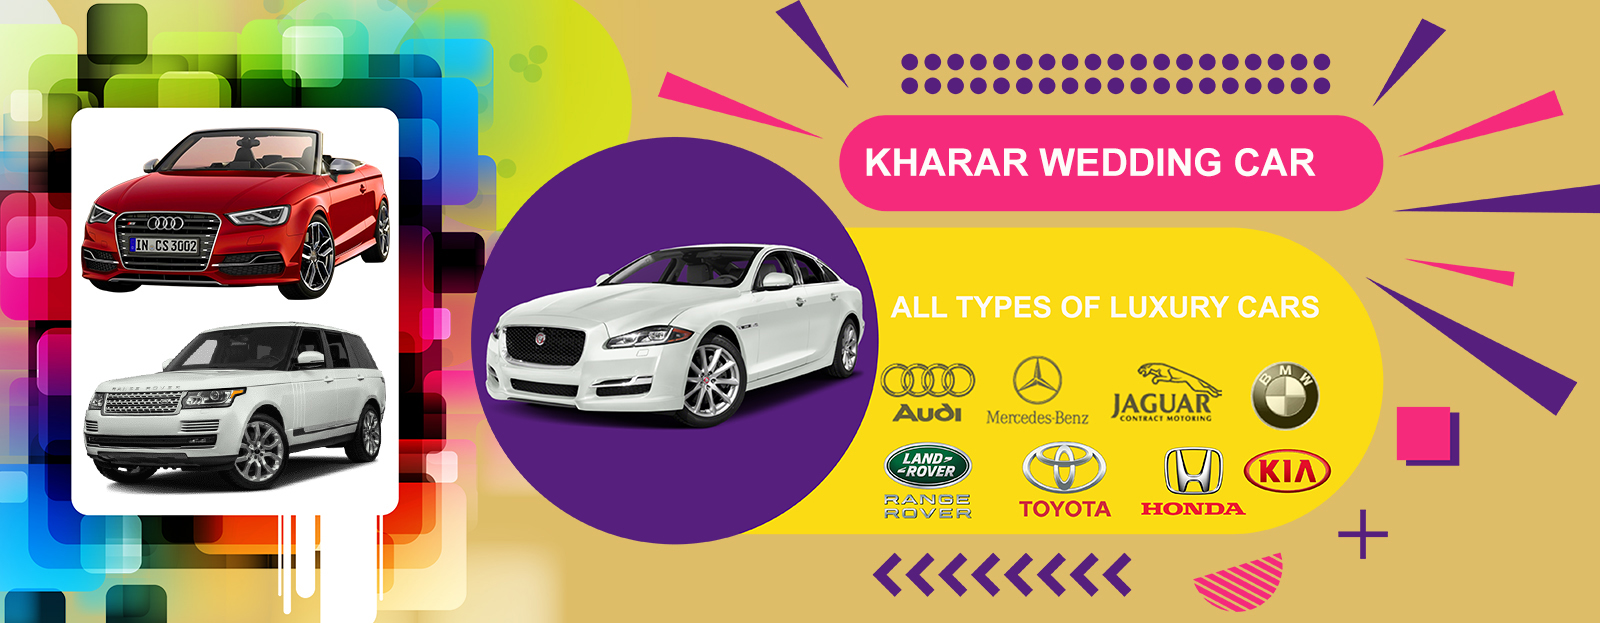 kharar wedding car rental